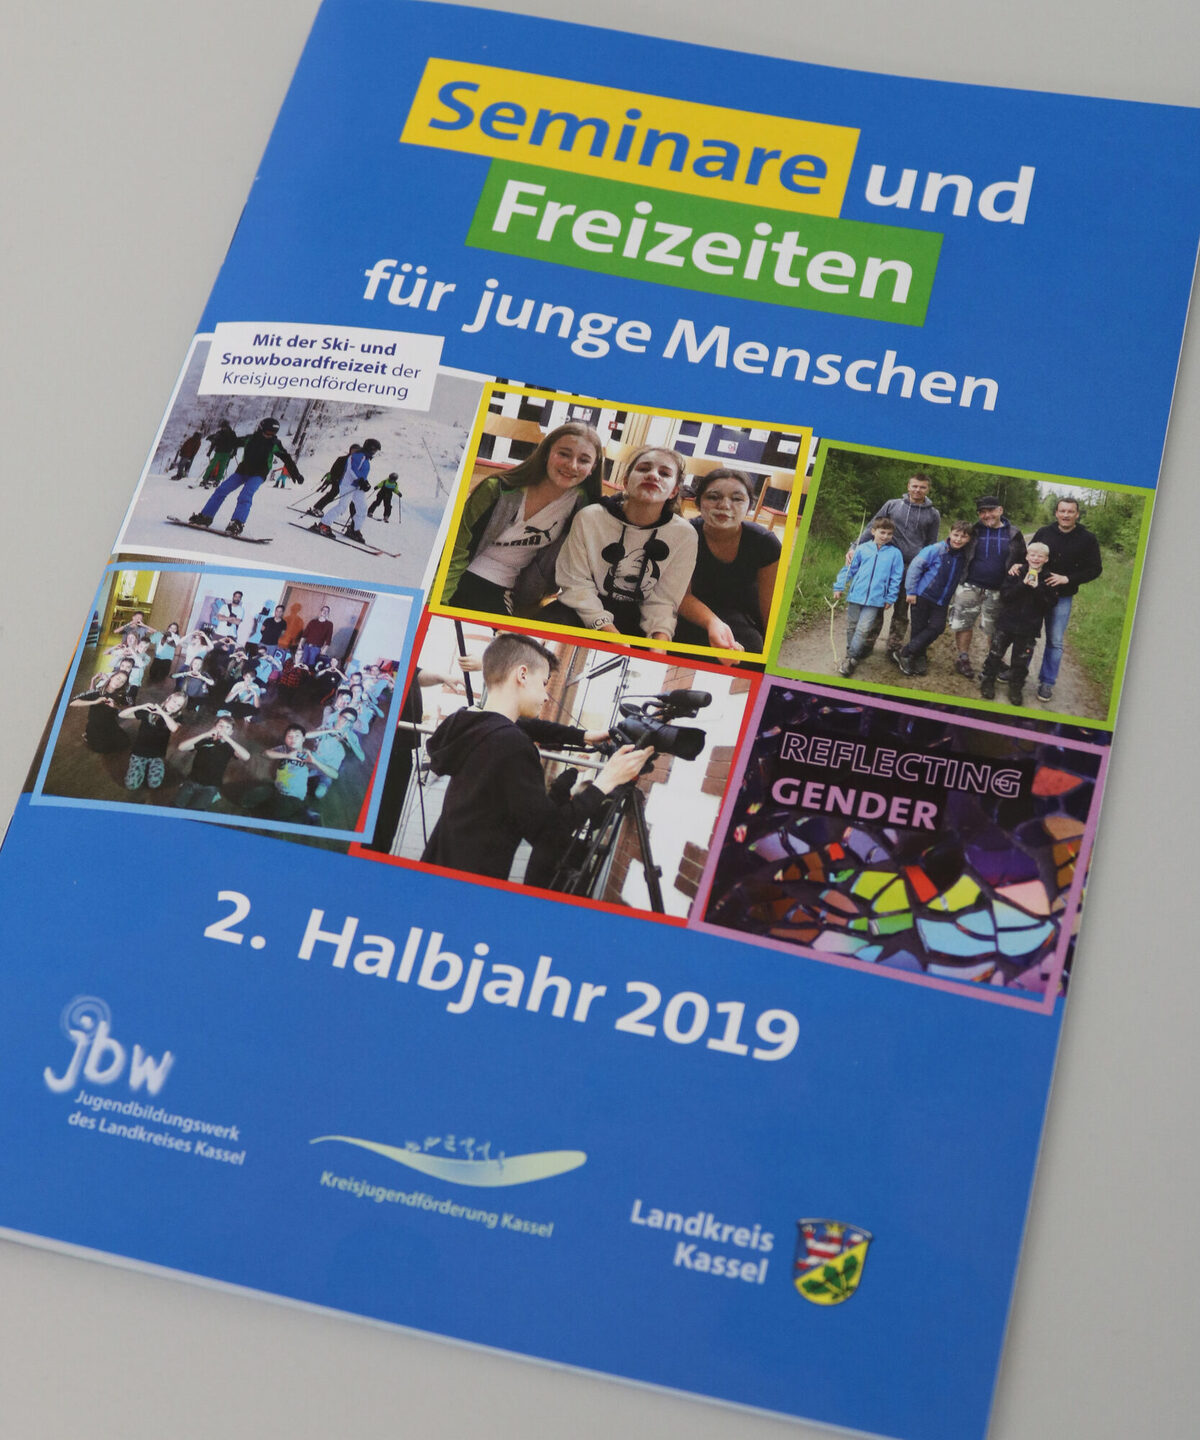 Programm des Jugendbildungswerks im Landkreis Kassel und der Kreisjugendförderung Kassel für das 2. Halbjahr 2019